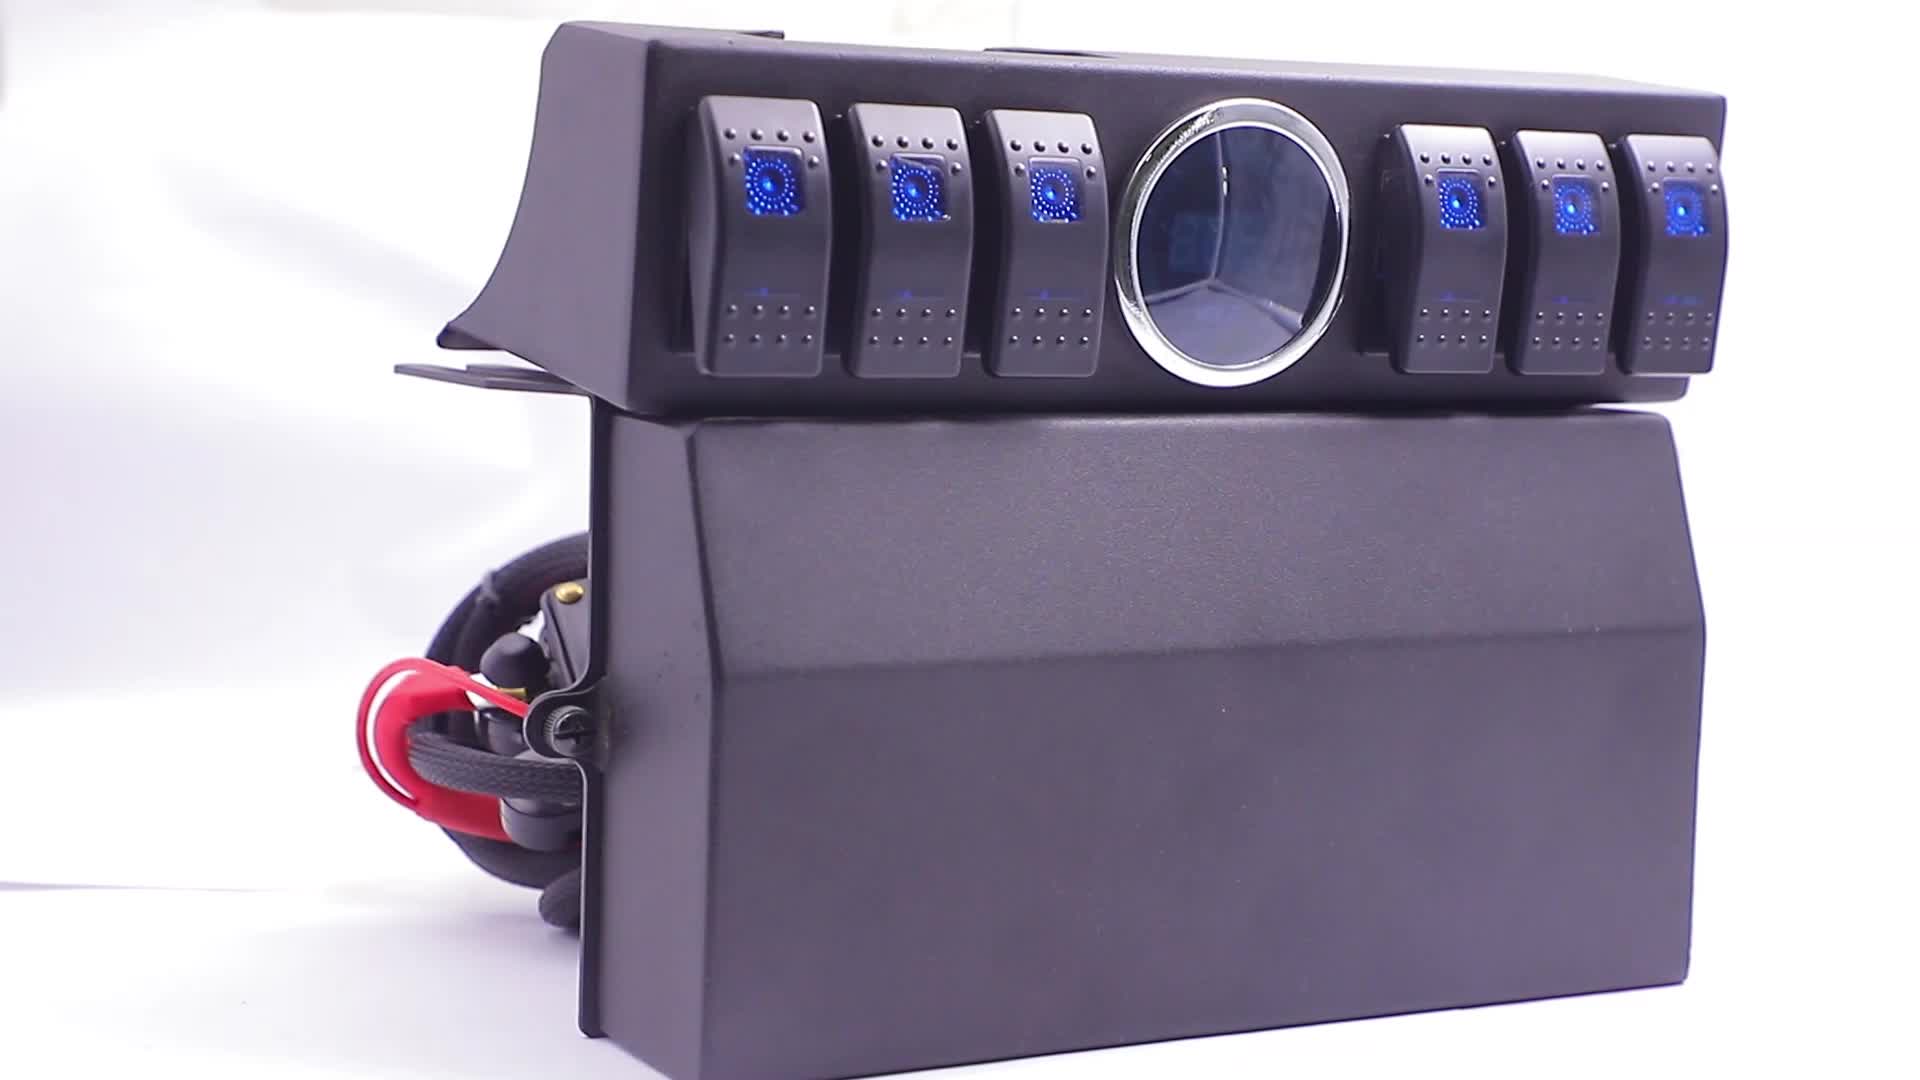 Auto Car1用のブラケットと電圧計を備えた6ギャングスイッチパネル